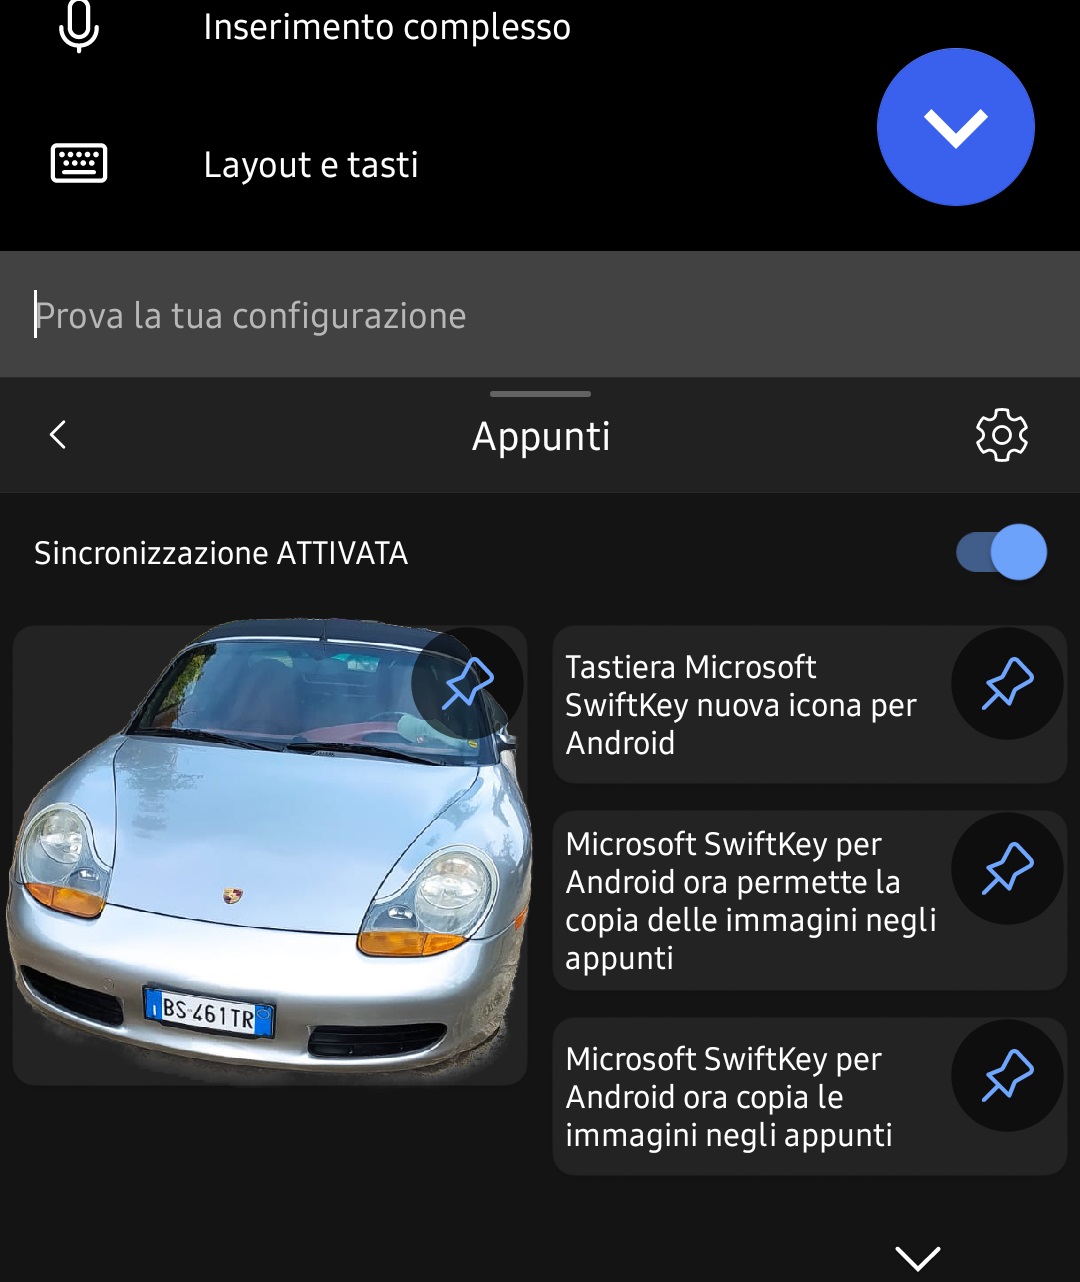 Microsoft SwiftKey per Android - Copia delle immagini negli appunti